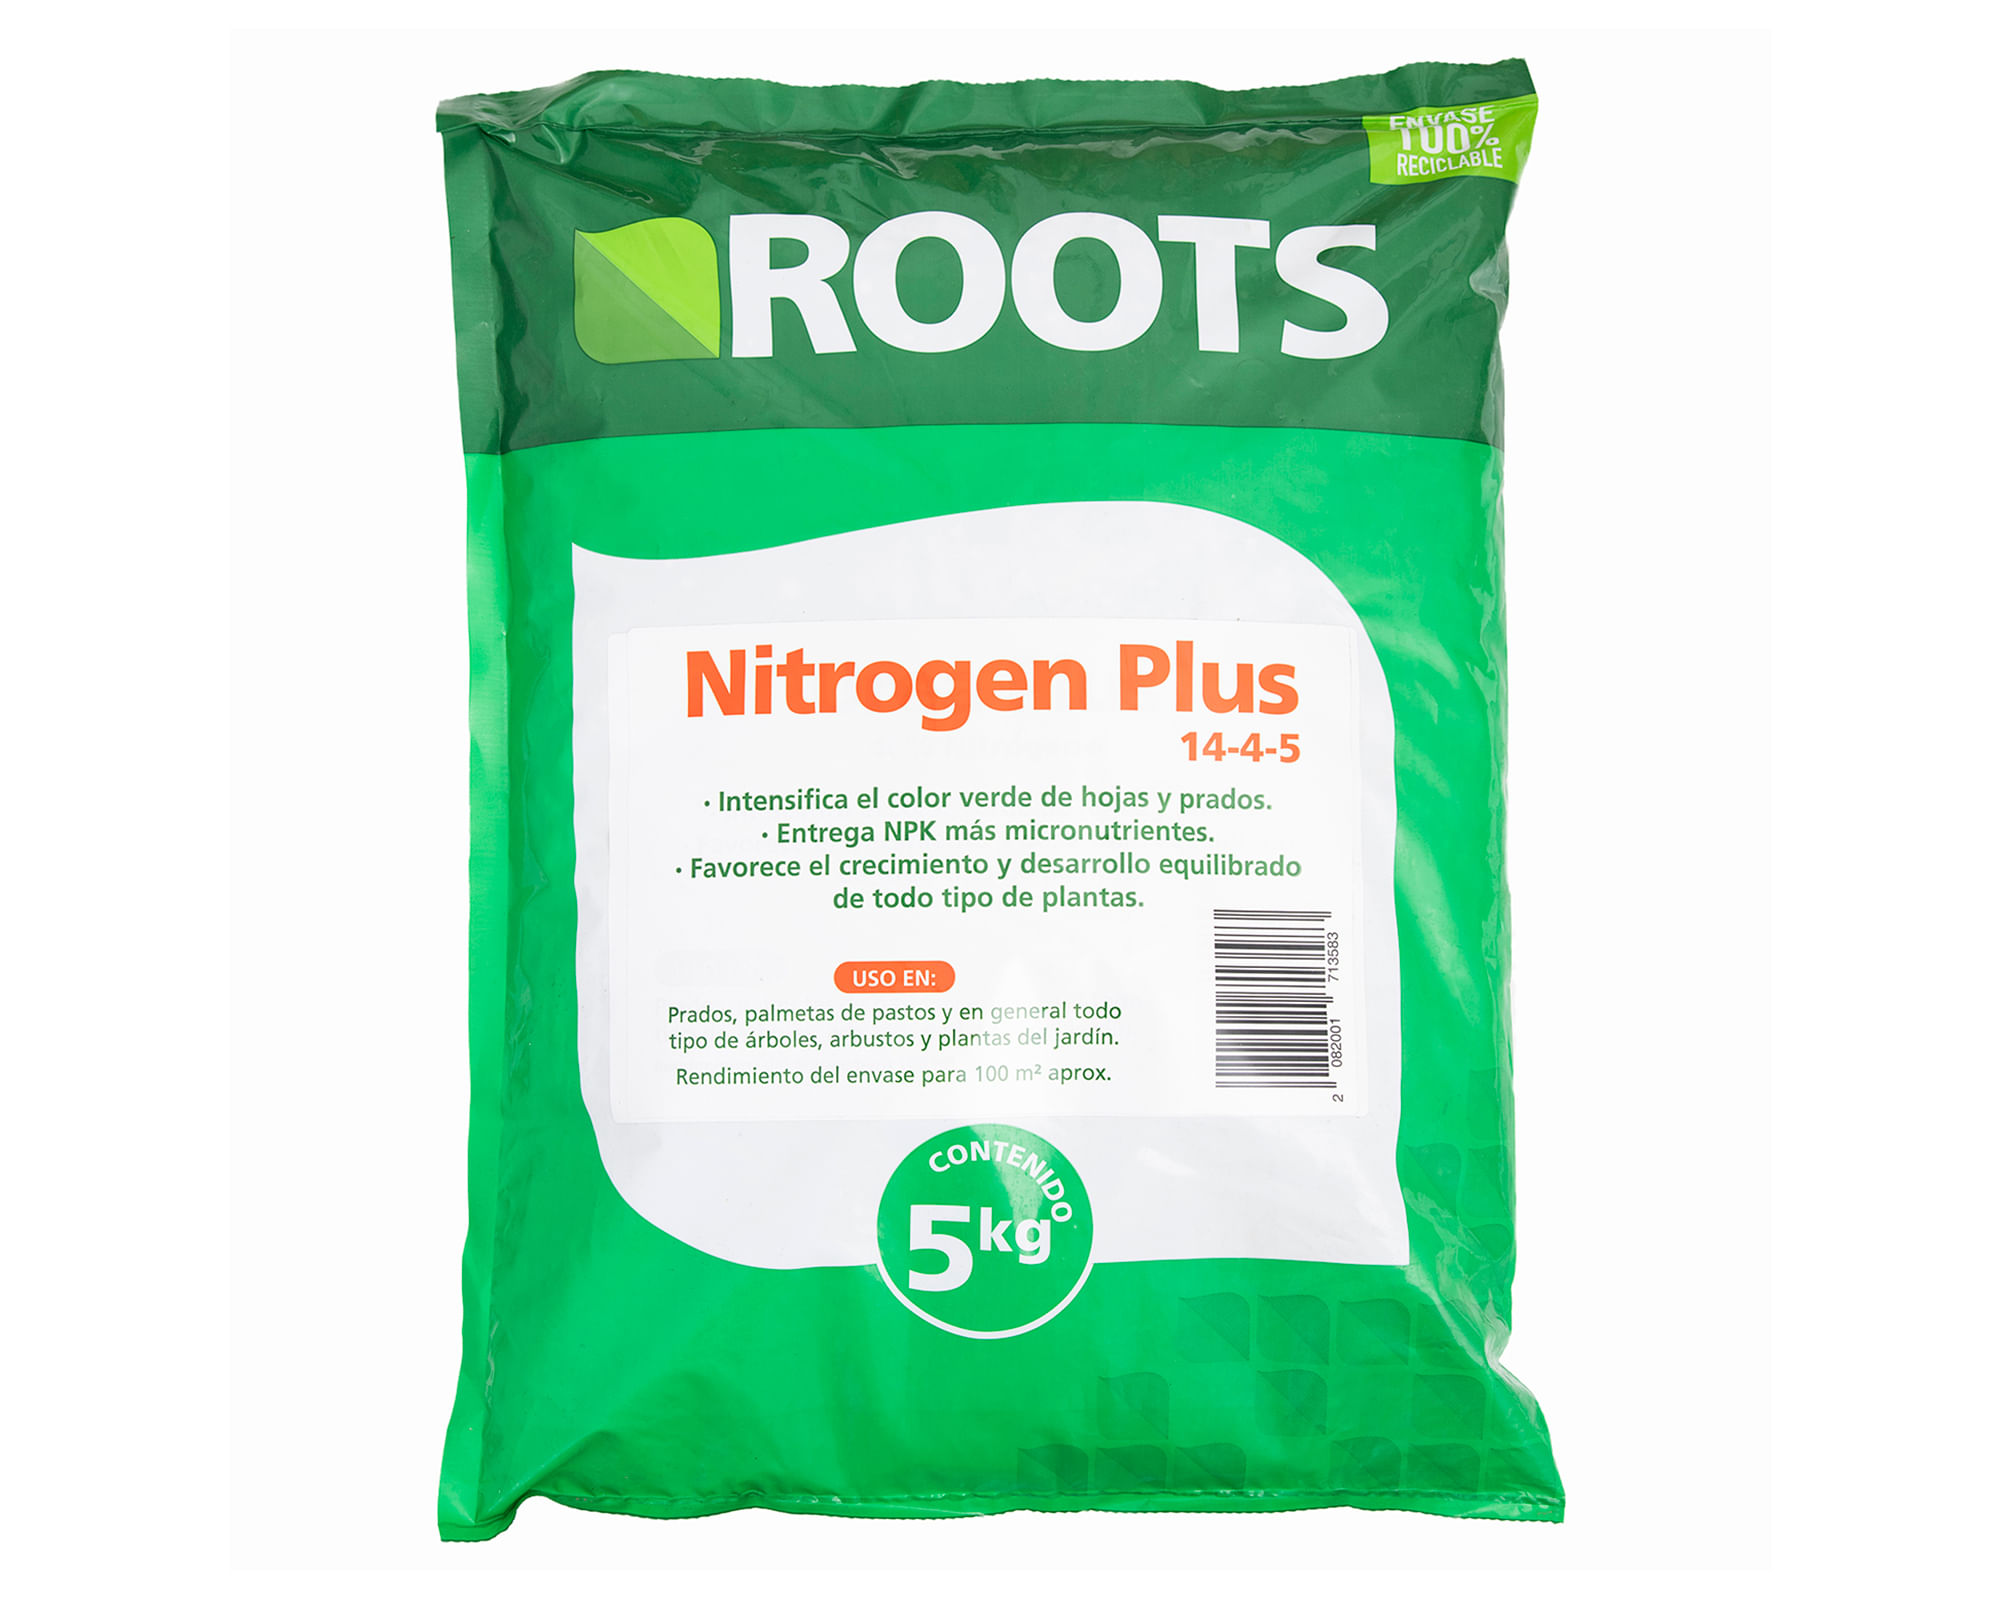 Fertilizante Nitrogen Plus 5 kg